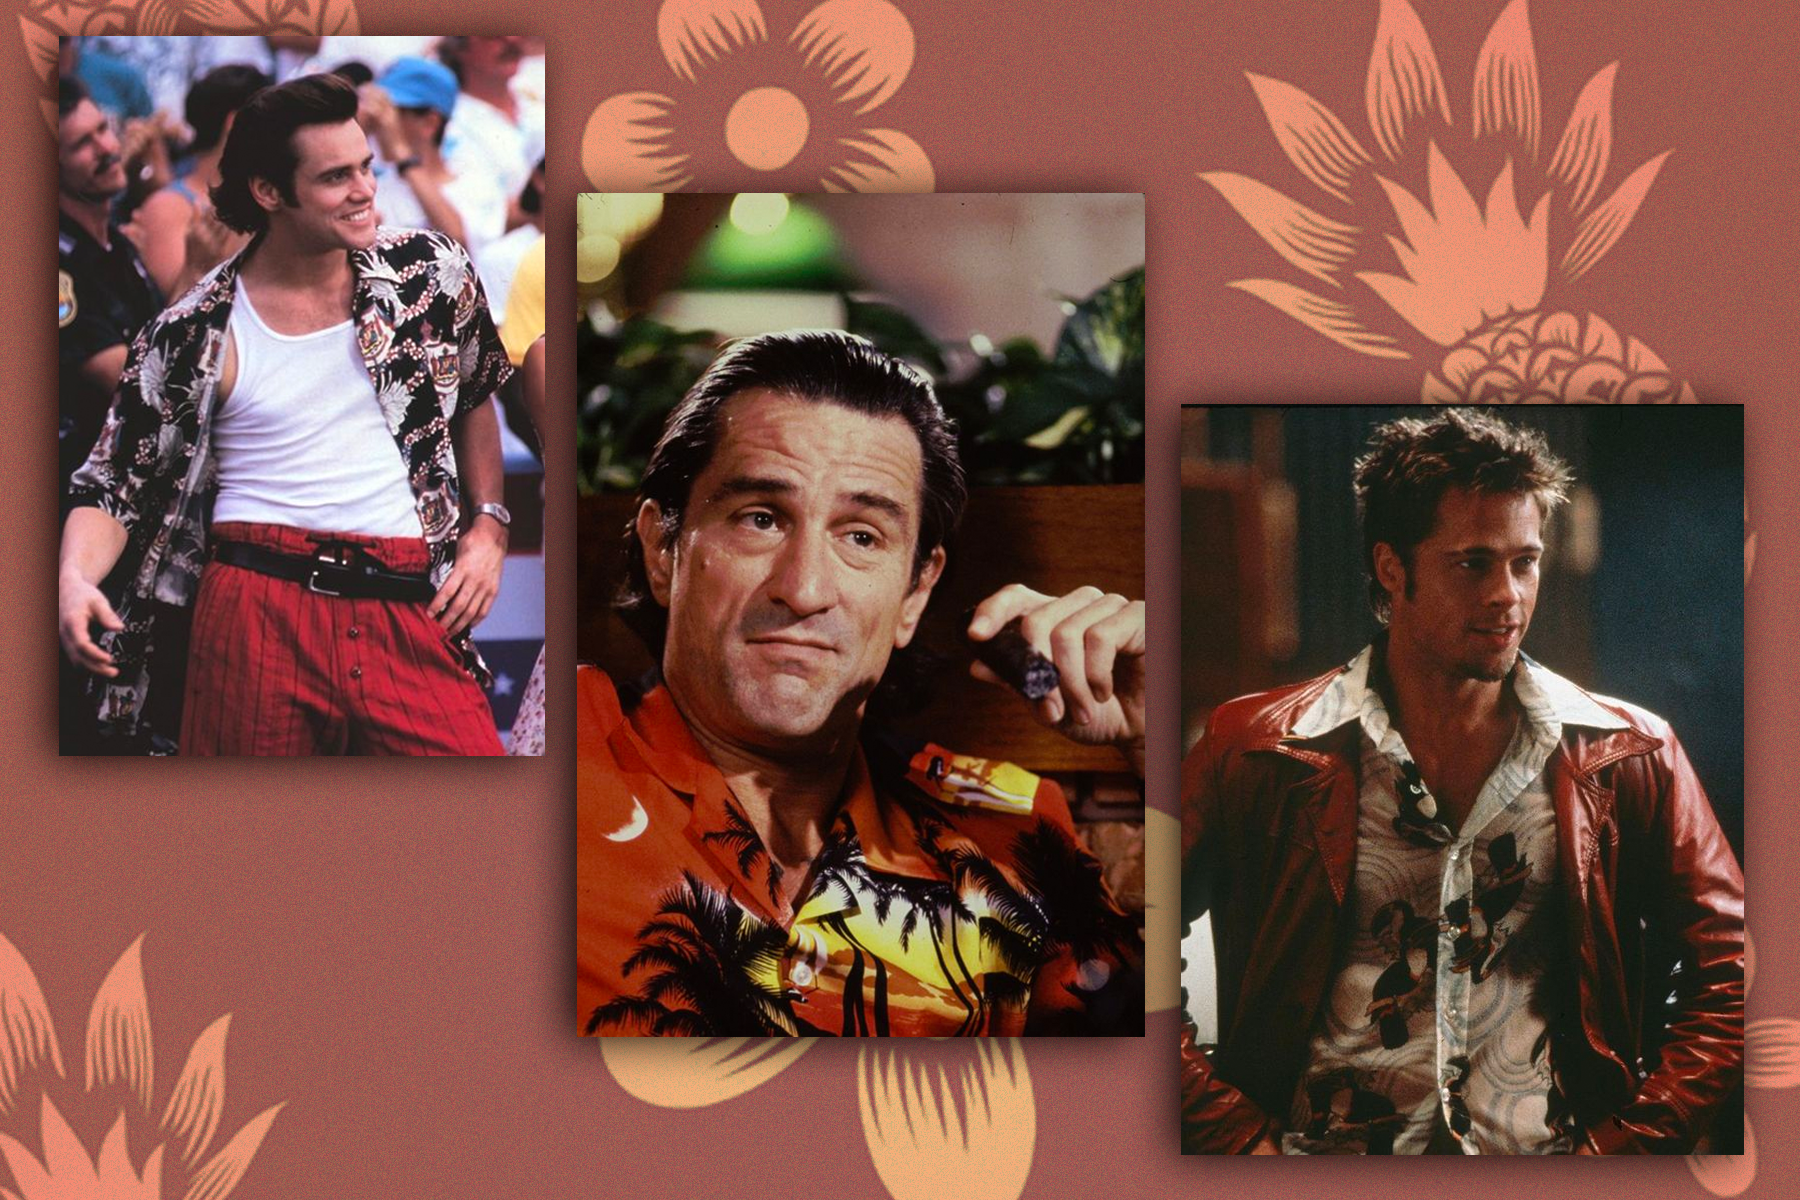 Un collage de Jim Carrey de Ace Ventura, Robert DeNiro de Cape Fear y Brad Pitt de Fight Club, todos con la camiseta de Aloha.